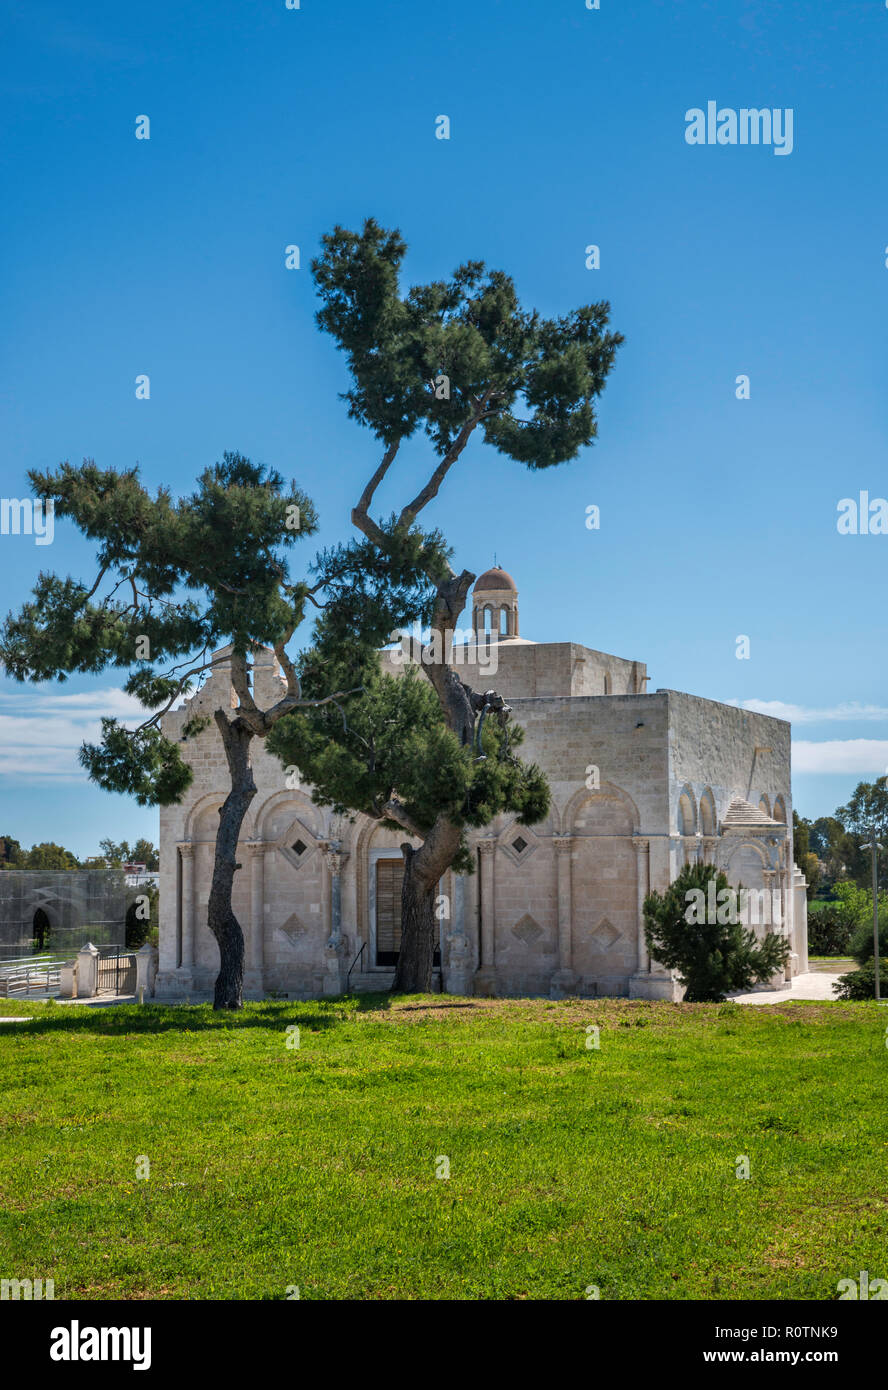 Basilica of Santa Maria Maggiore di Siponto, Romanesque, 12th century, near Manfredonia, Apulia, Italy Stock Photo